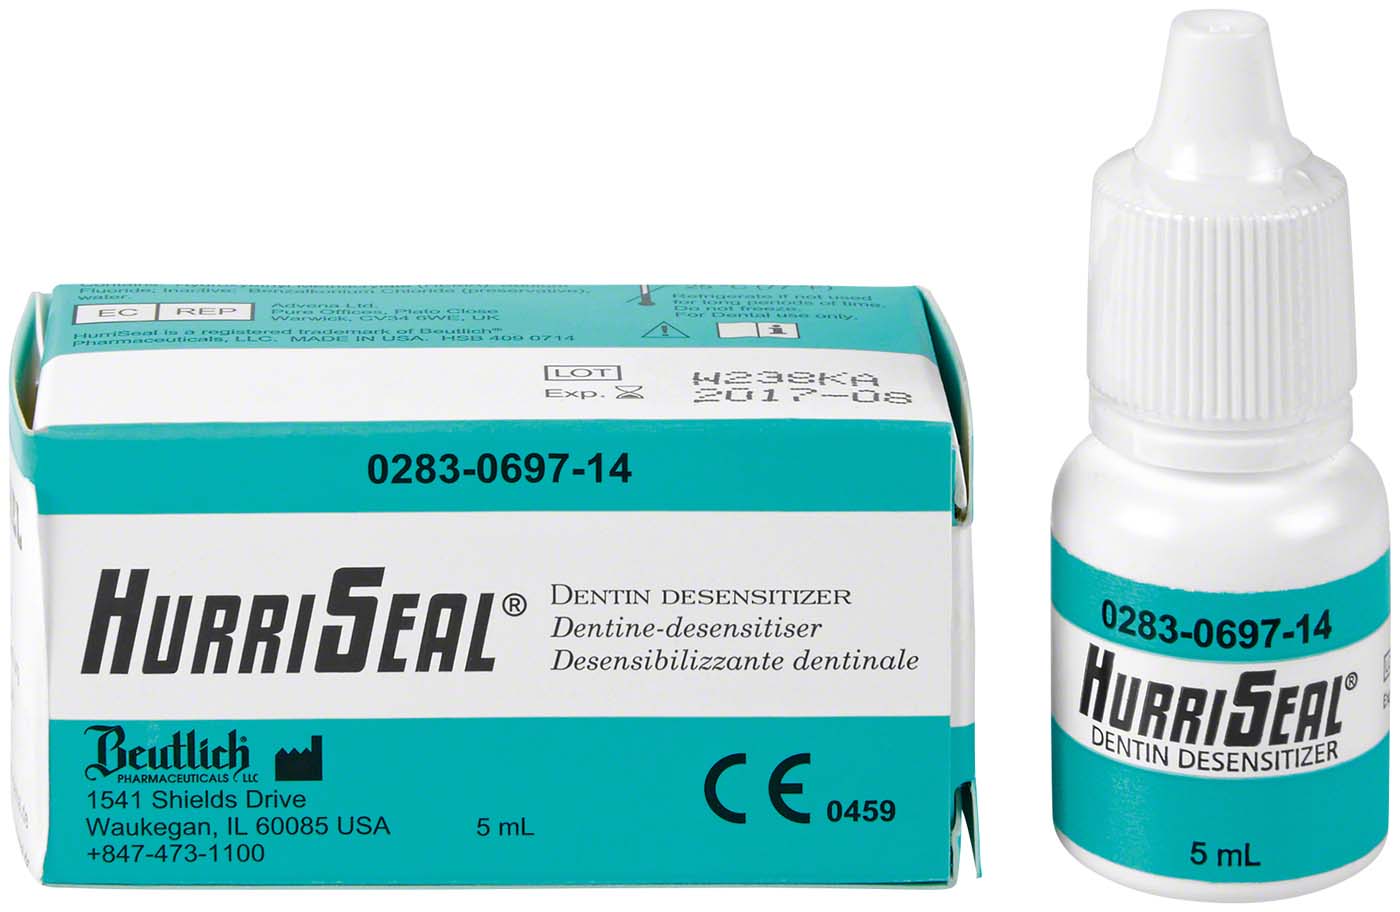 HurriSeal® Beutlich Pharmaceuticals